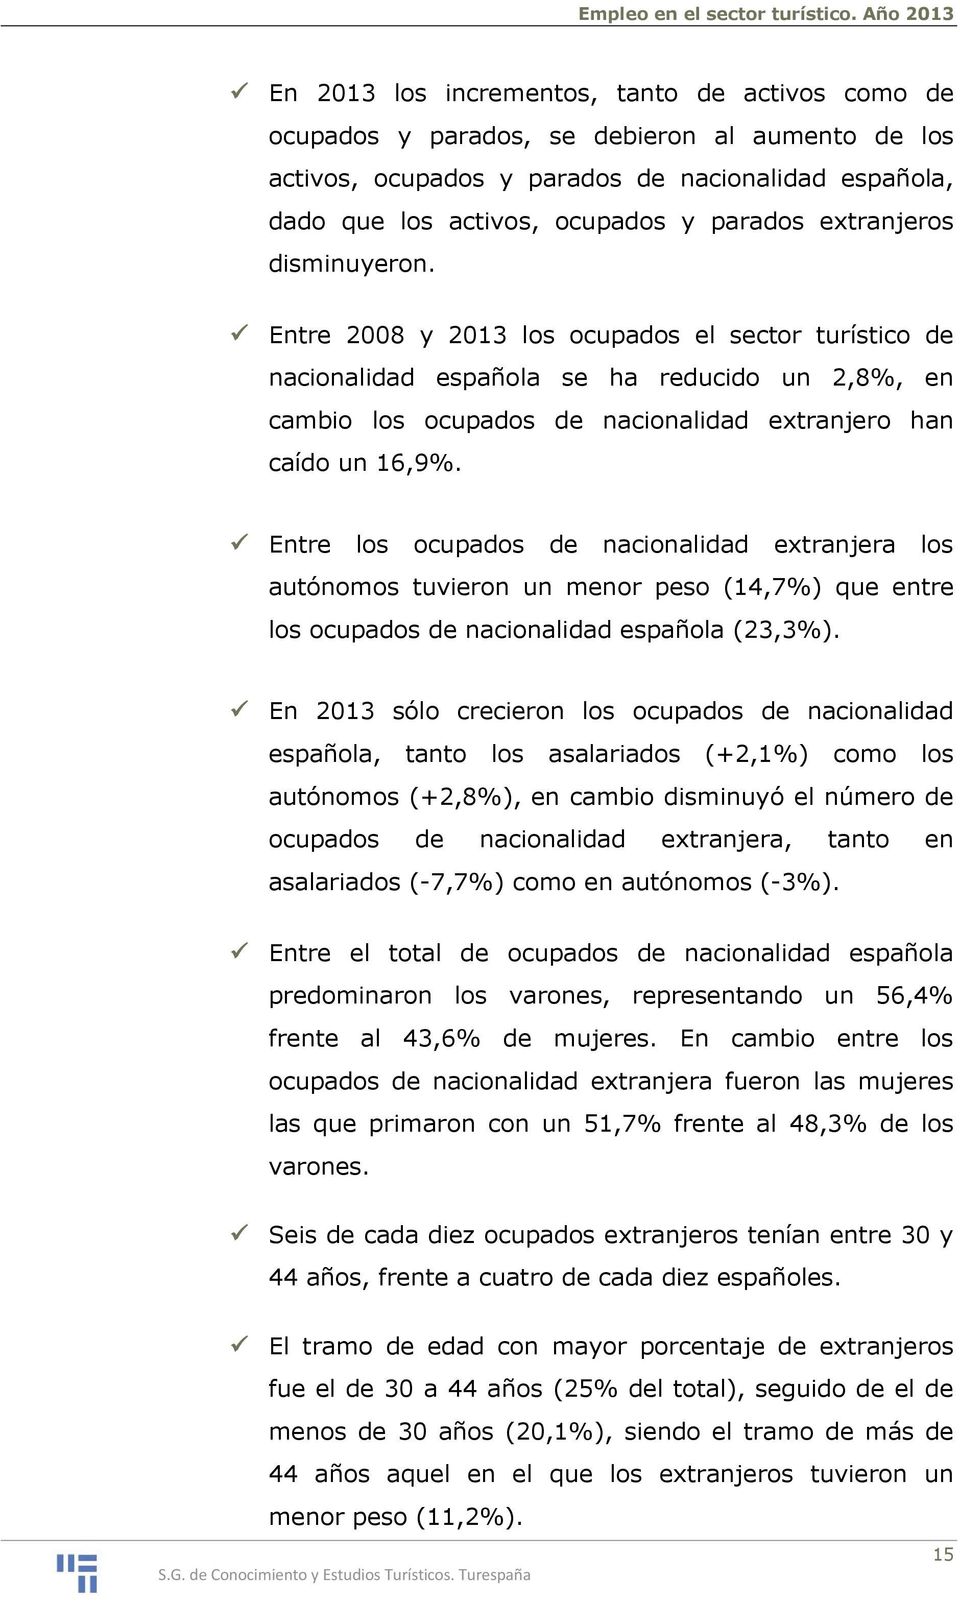 Entre los ocupados de nacionalidad extranjera los autónomos tuvieron un menor peso (14,7%) que entre los ocupados de nacionalidad española (23,3%).